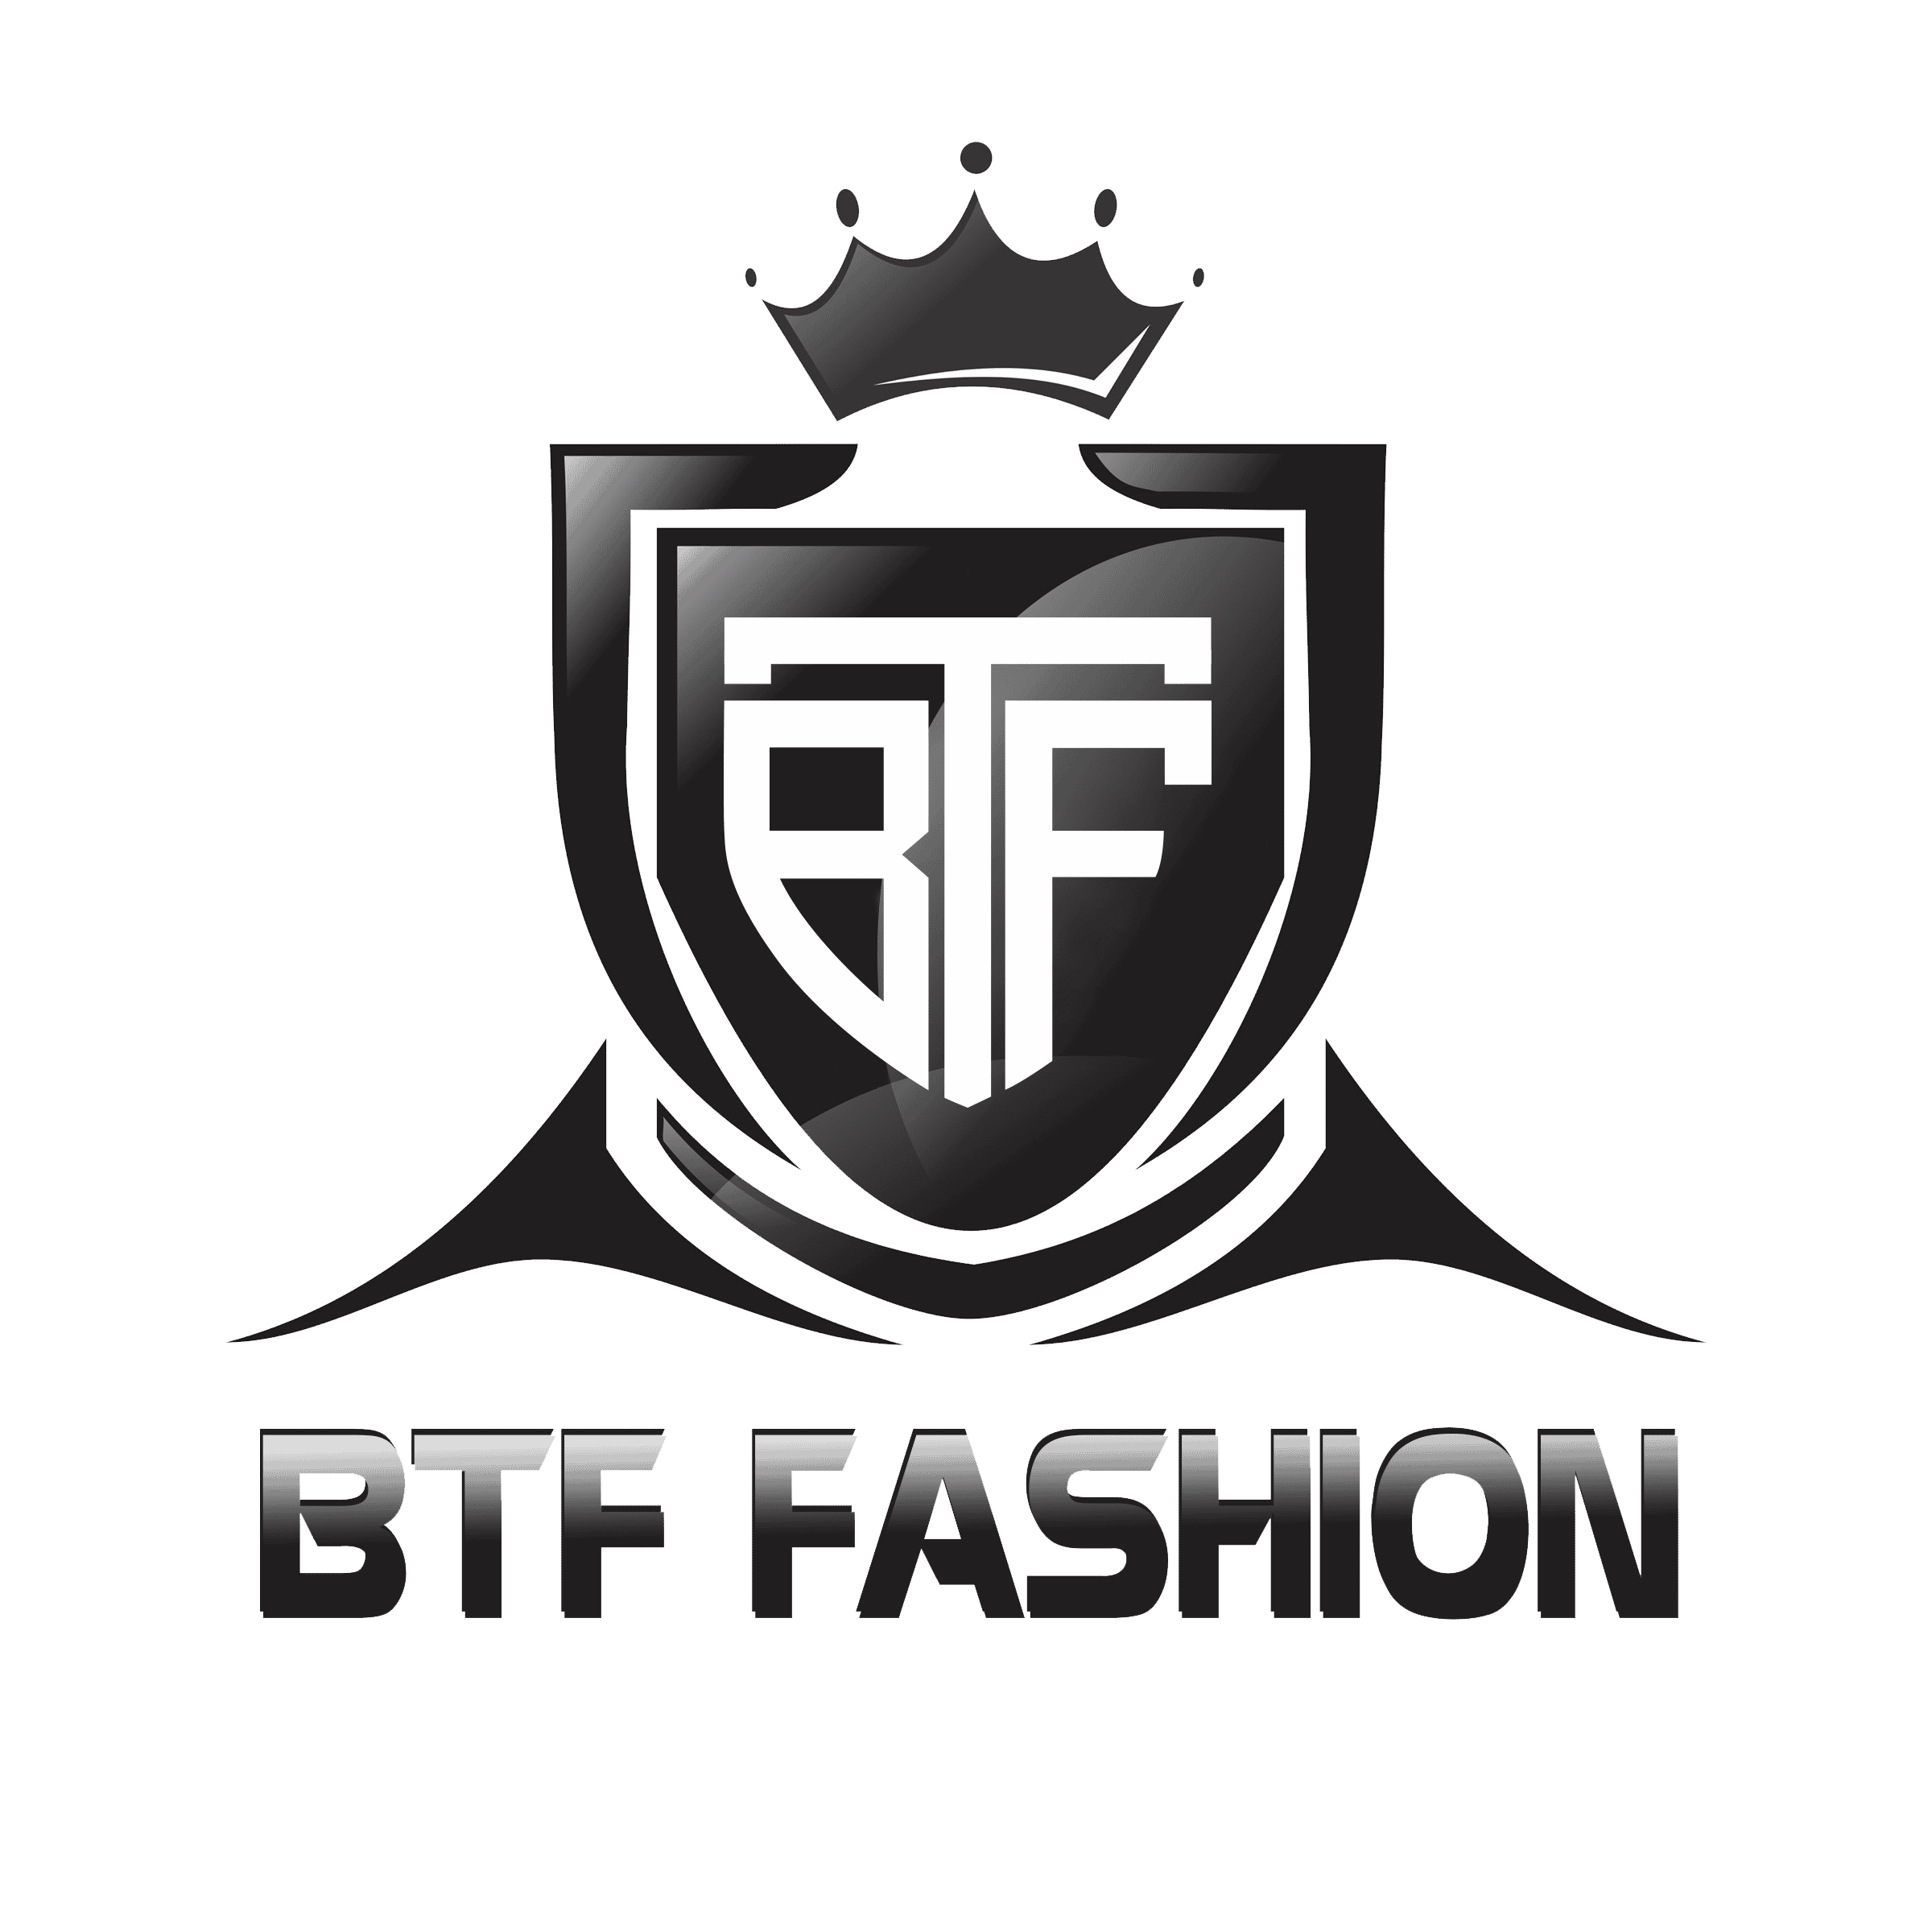 BTF Fashion